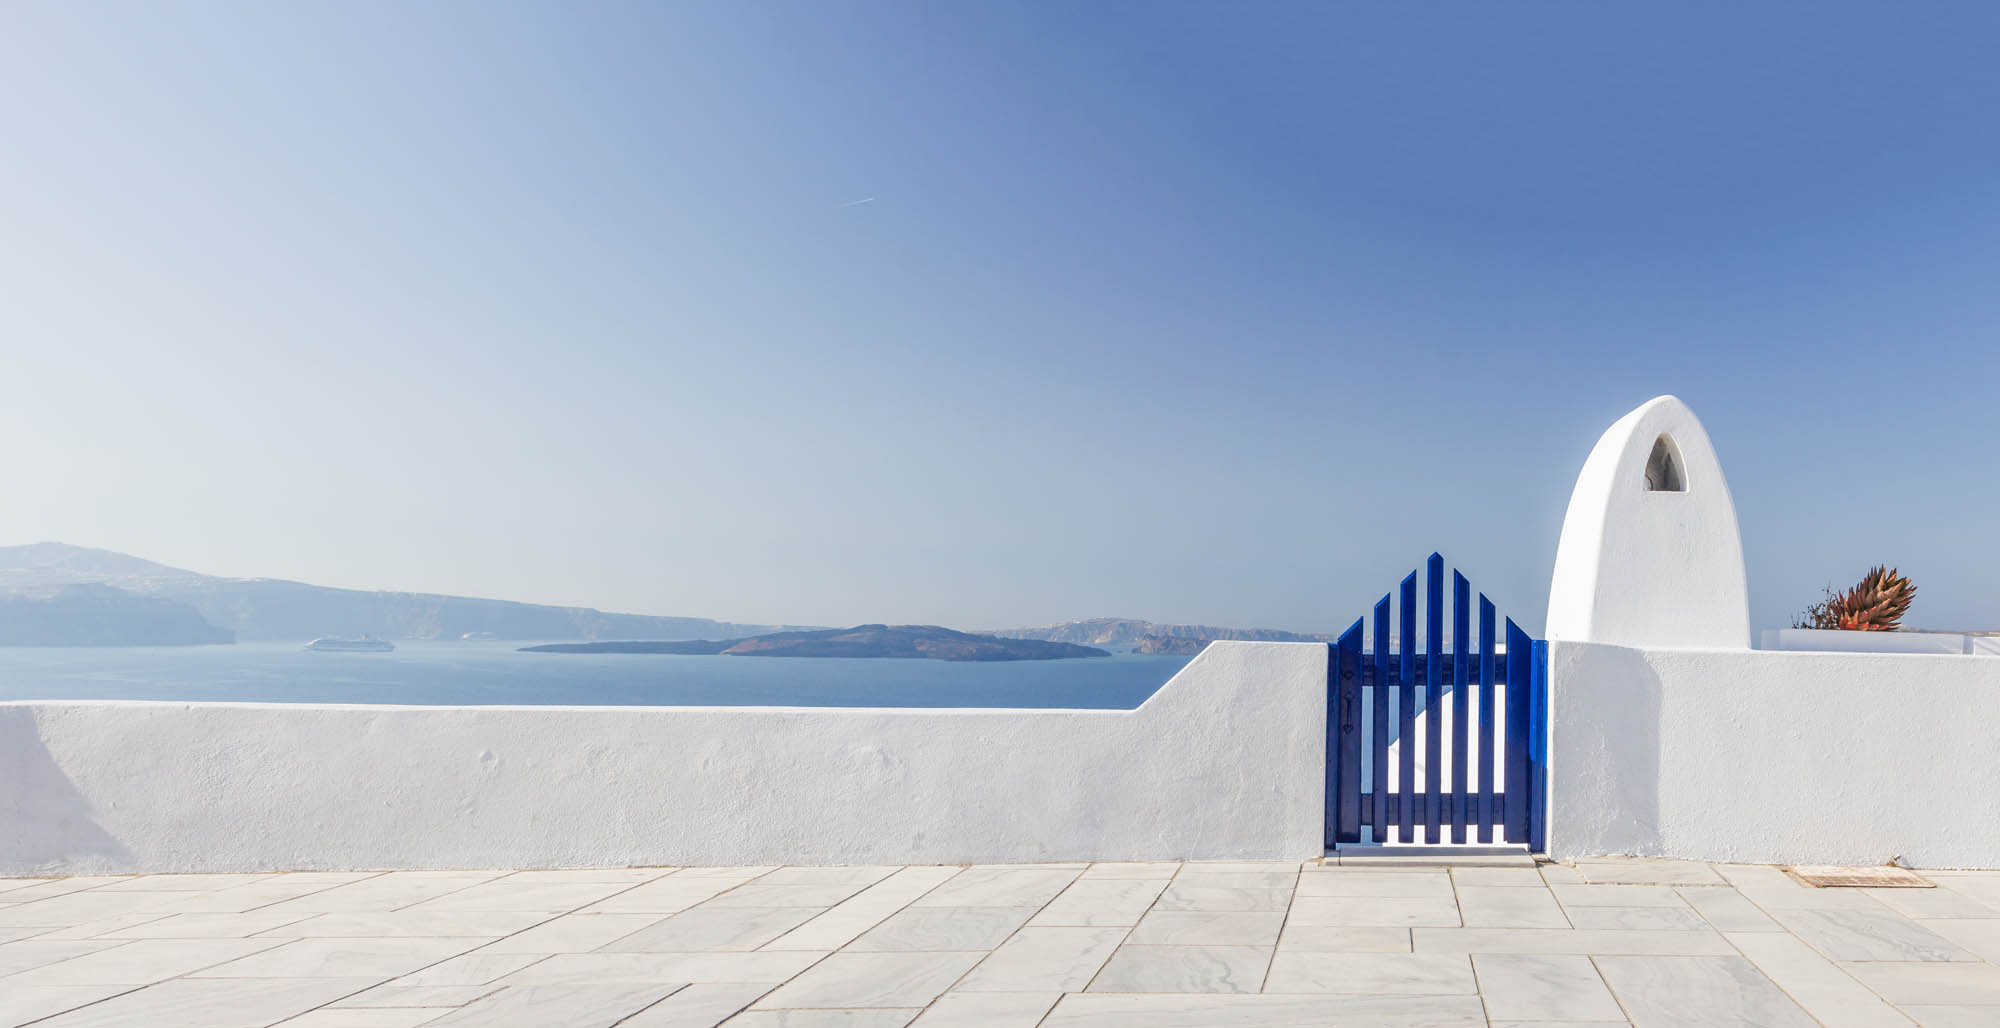 grecko, biały niebieski pejzaż z niebem w tle, biały budynek i niebieska furtka